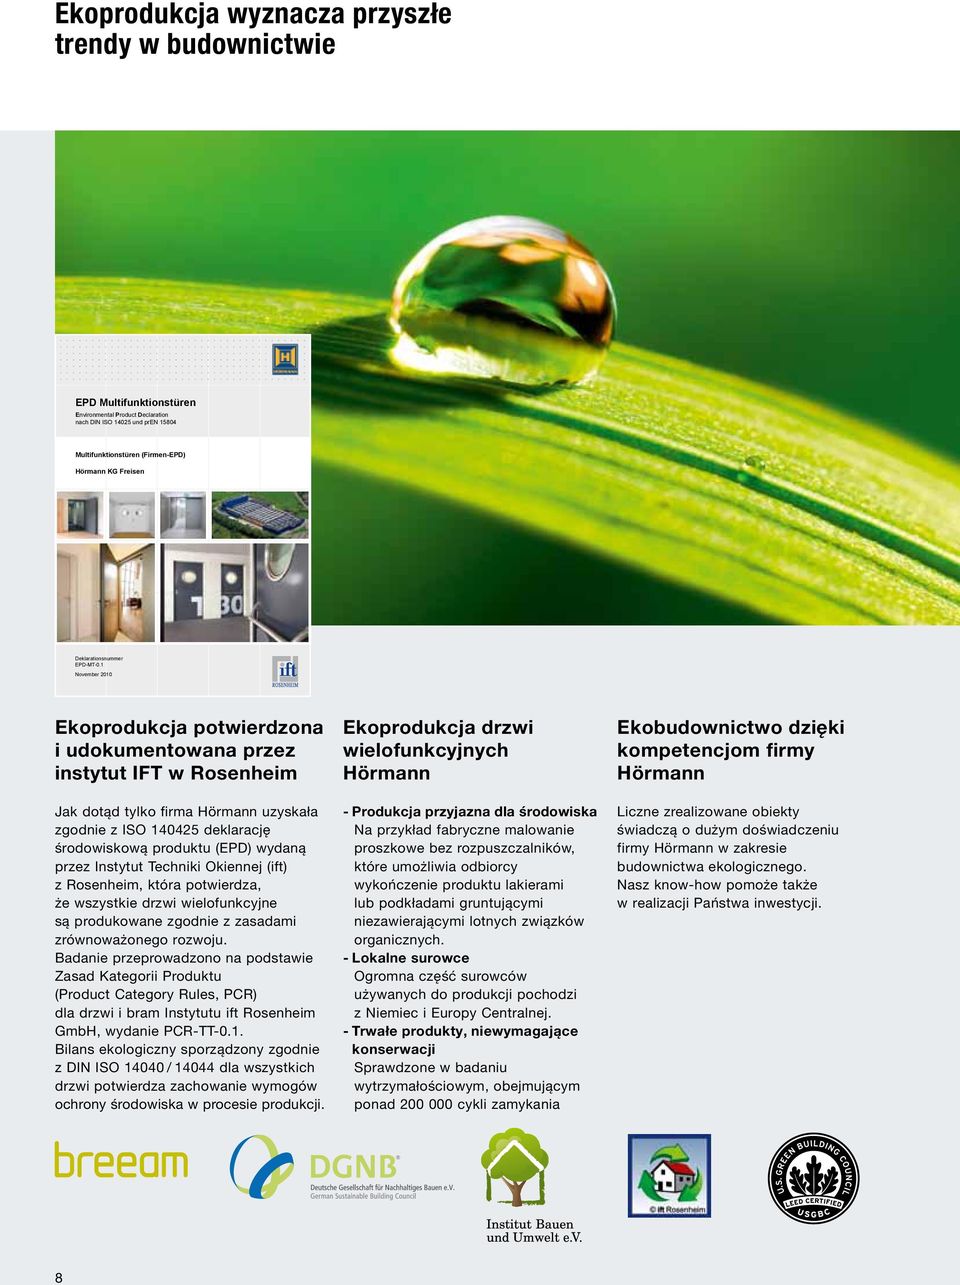 1 November 2010 Ekoprodukcja potwierdzona i udokumentowana przez instytut IFT w Rosenheim Jak dotąd tylko firma Hörmann uzyskała zgodnie z ISO 140425 deklarację środowiskową produktu (EPD) wydaną